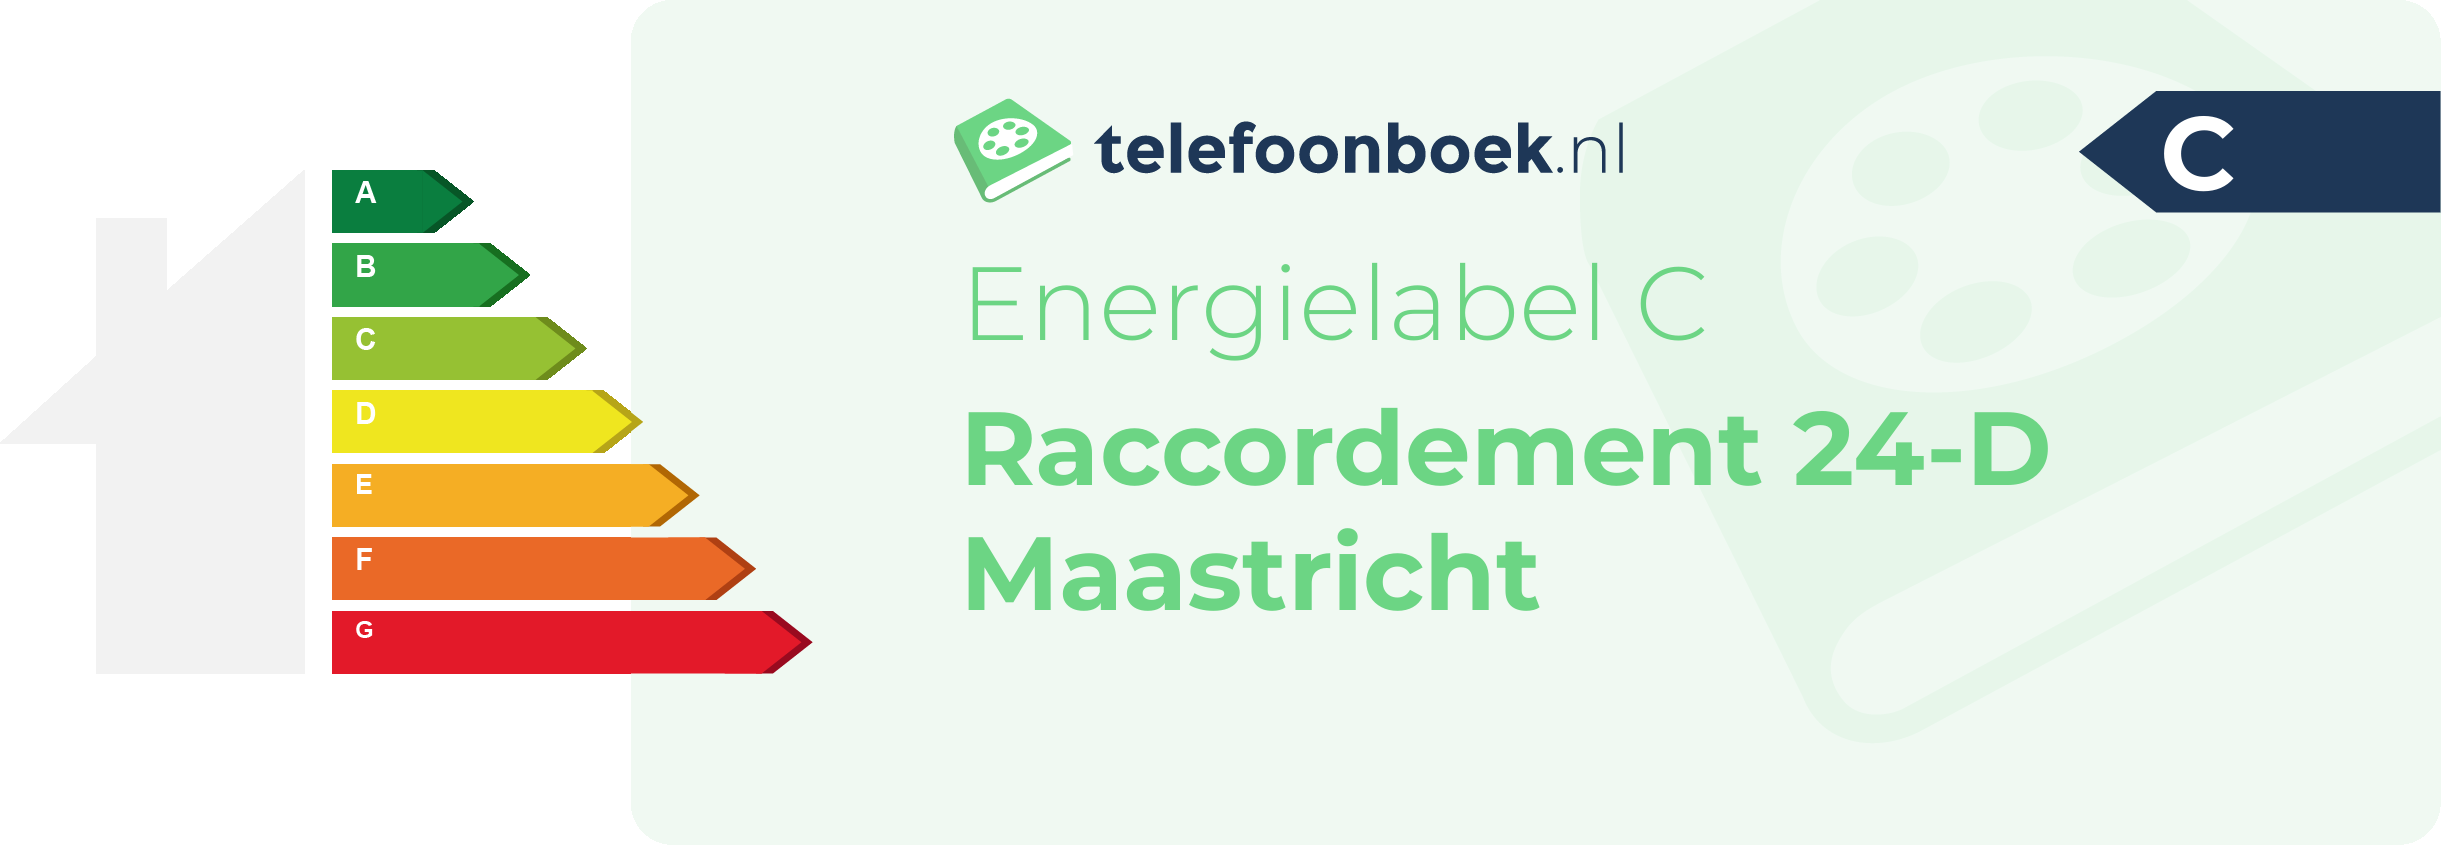 Energielabel Raccordement 24-D Maastricht